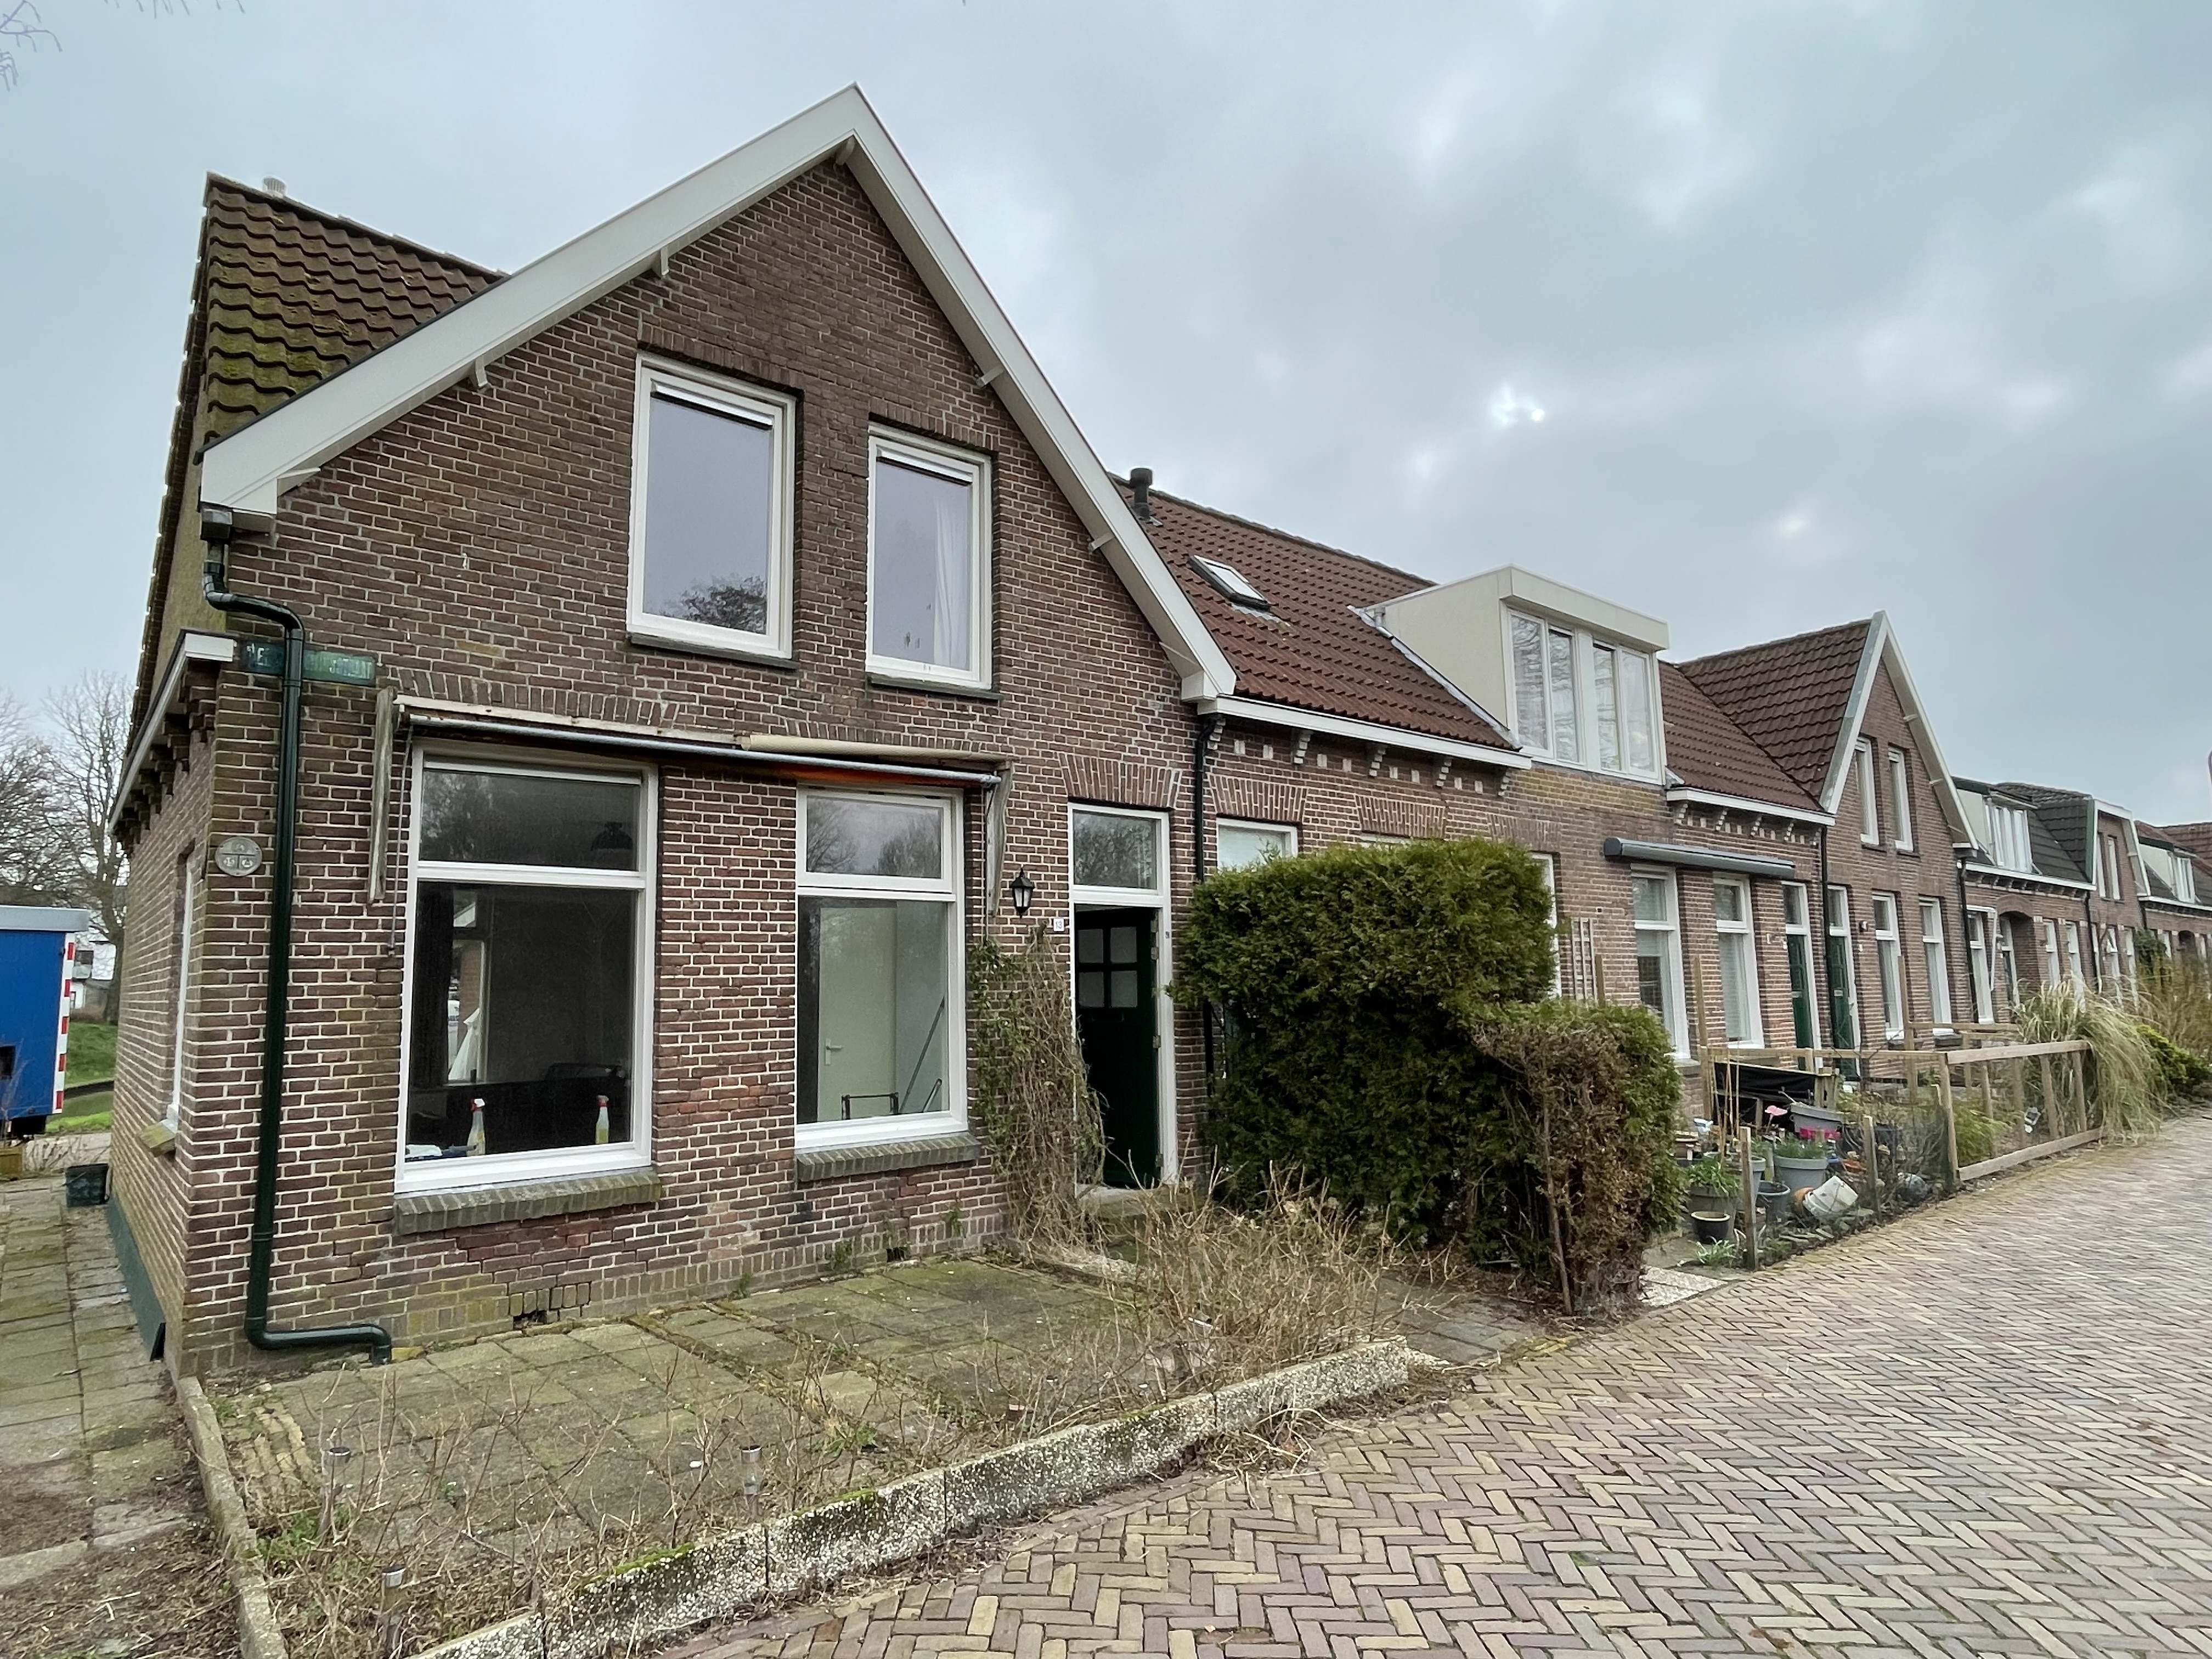 Pier Wensemiusstraat 13, 8801 HR Franeker, Nederland